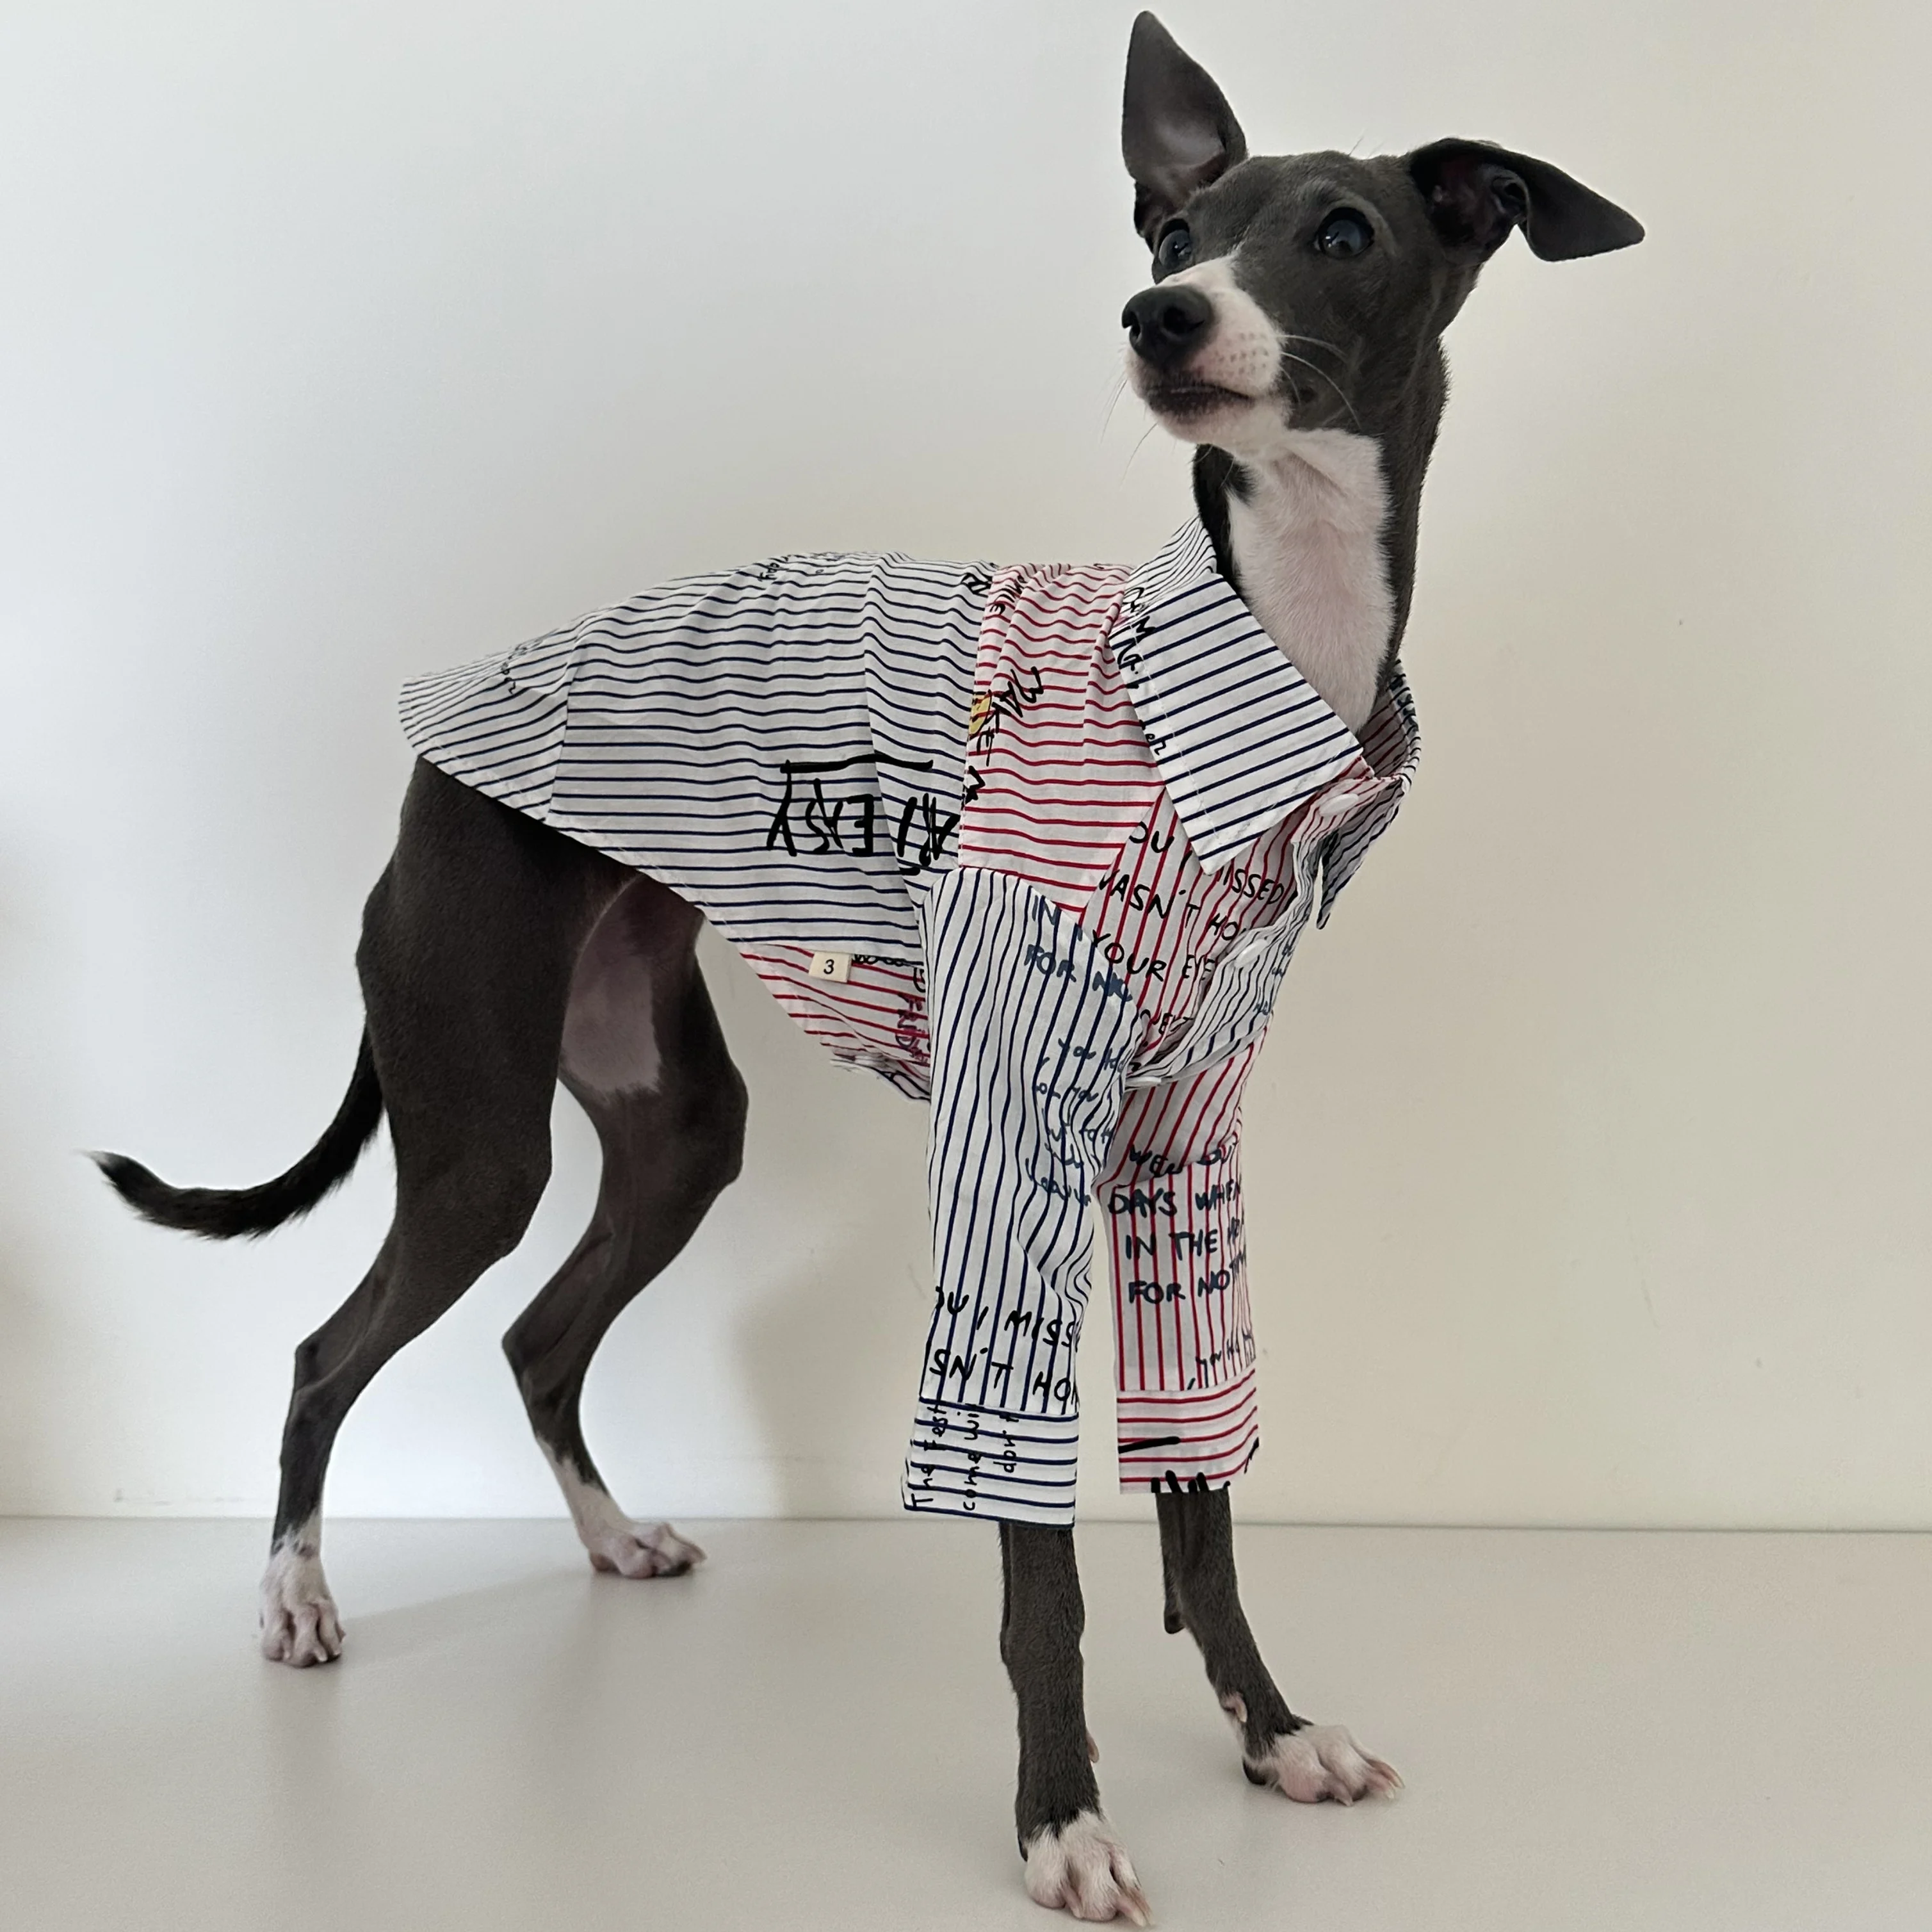 

Итальянский комбинезон Greyhound с четырьмя штанинами, зимнее теплое пальто для собак, одежда для собак Greyhound Whitbit